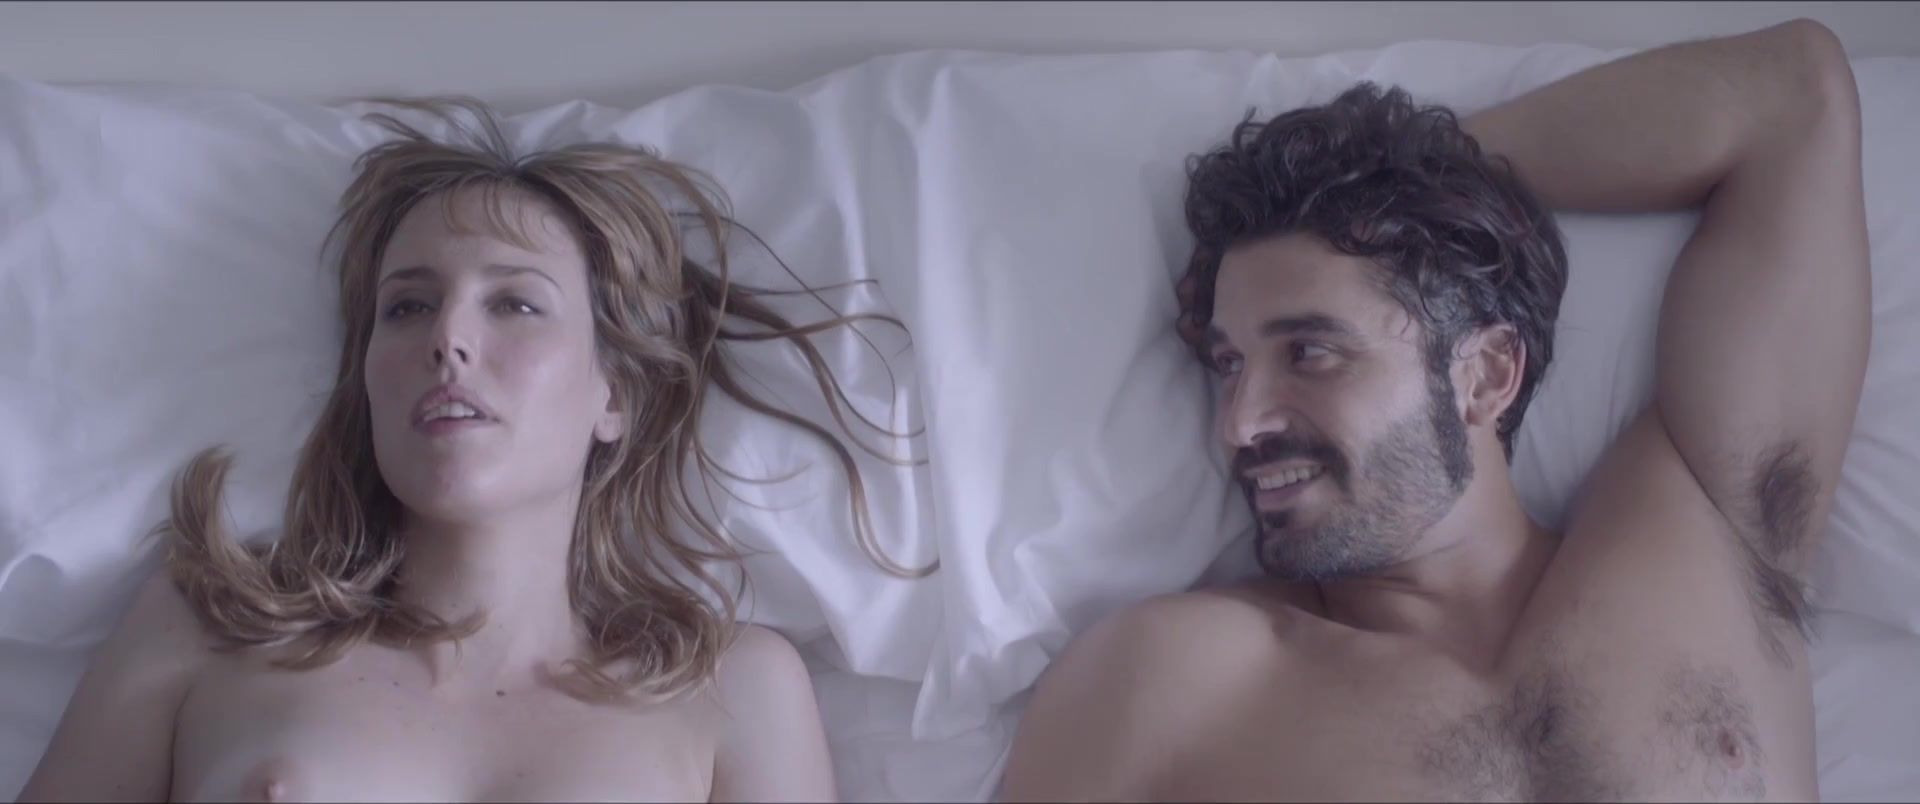 Voyeursex Natalia de Molina - Kiki, el amor se hace (2016) Domination - 1